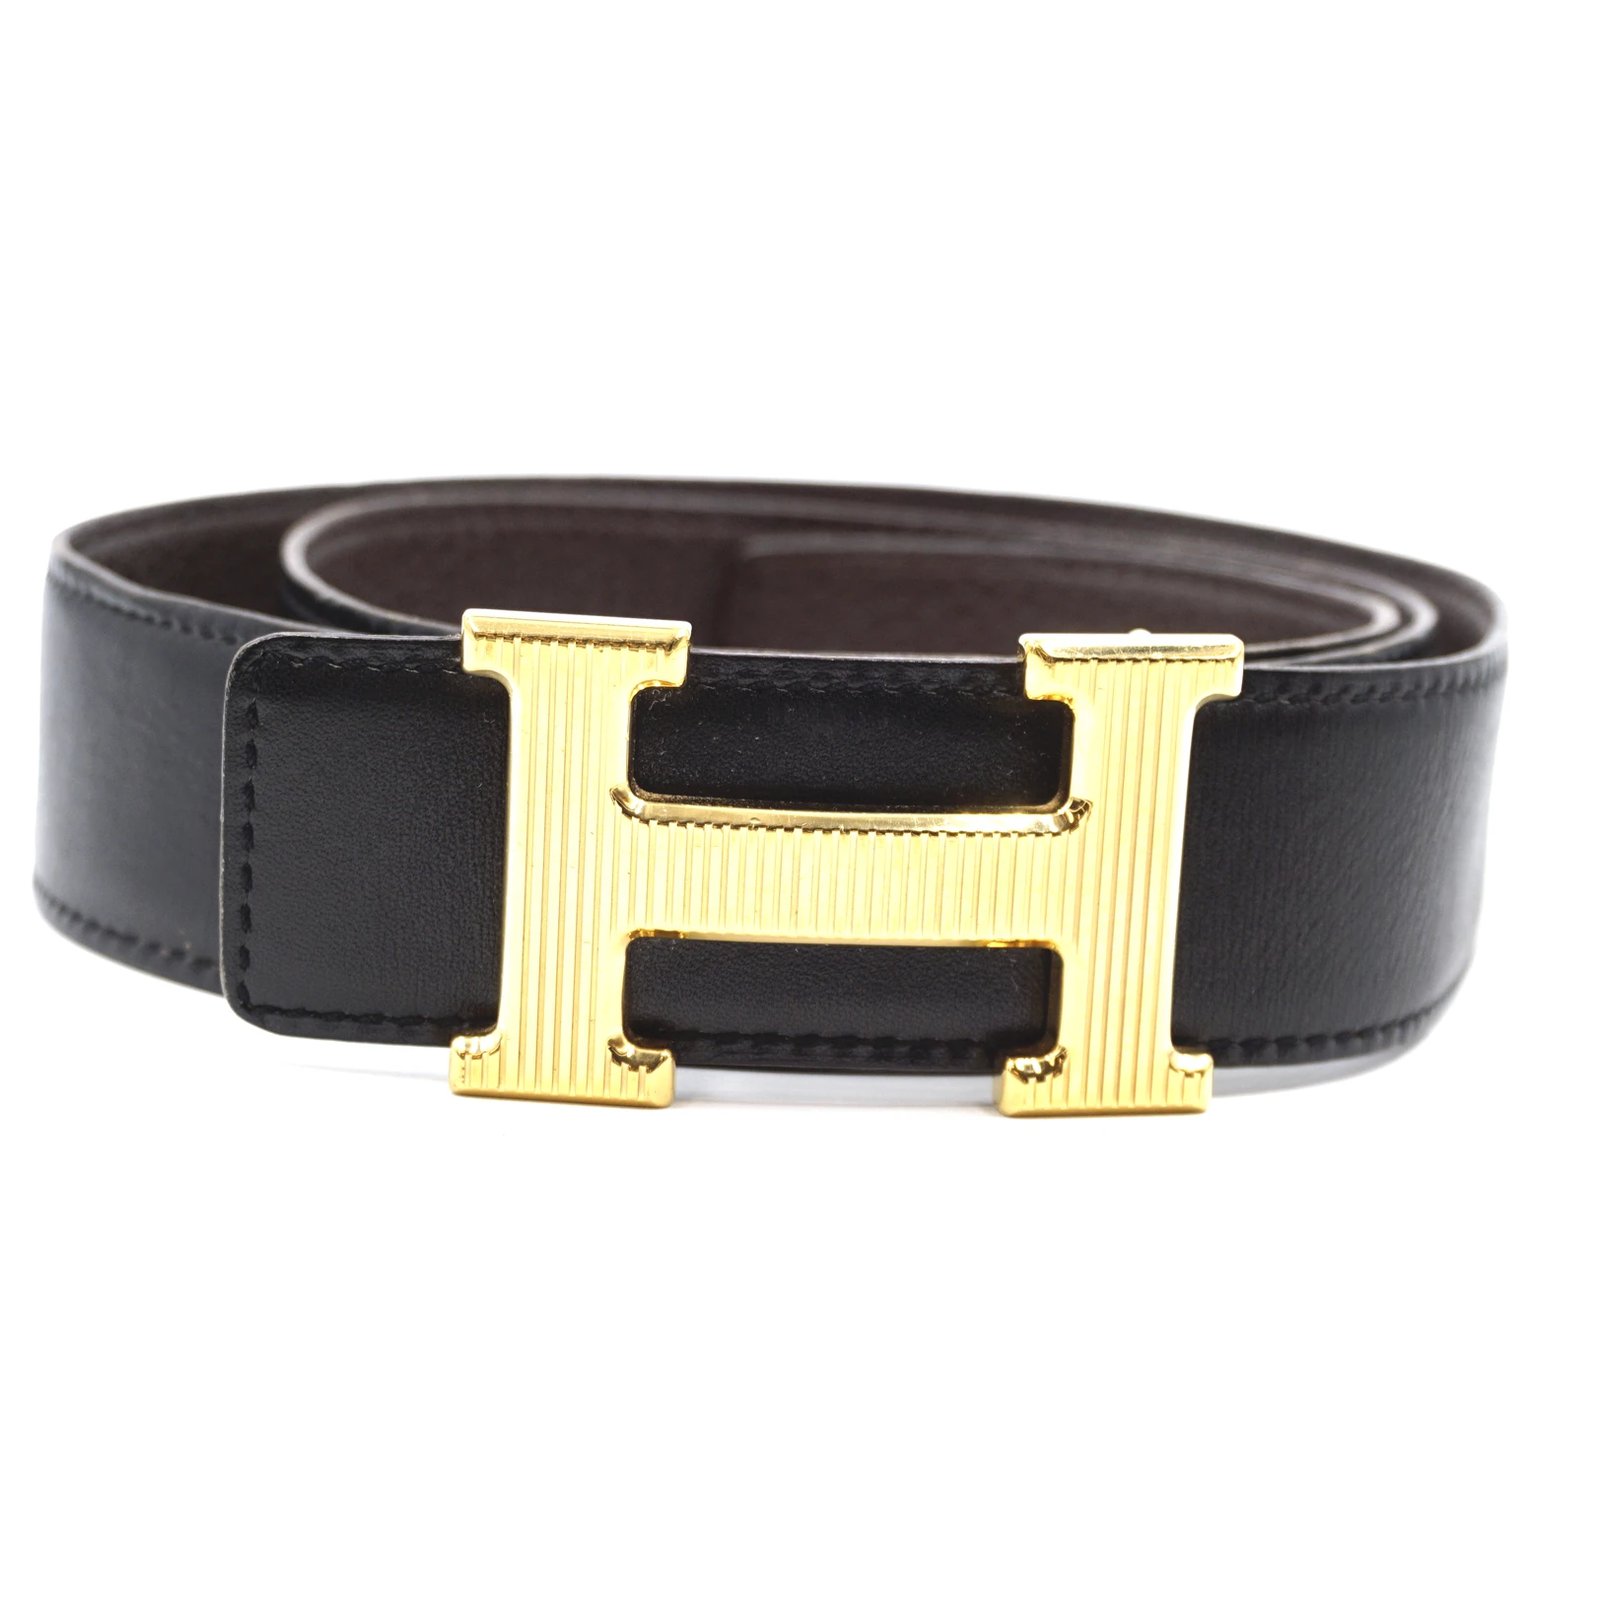 hermes belt women's black and gold